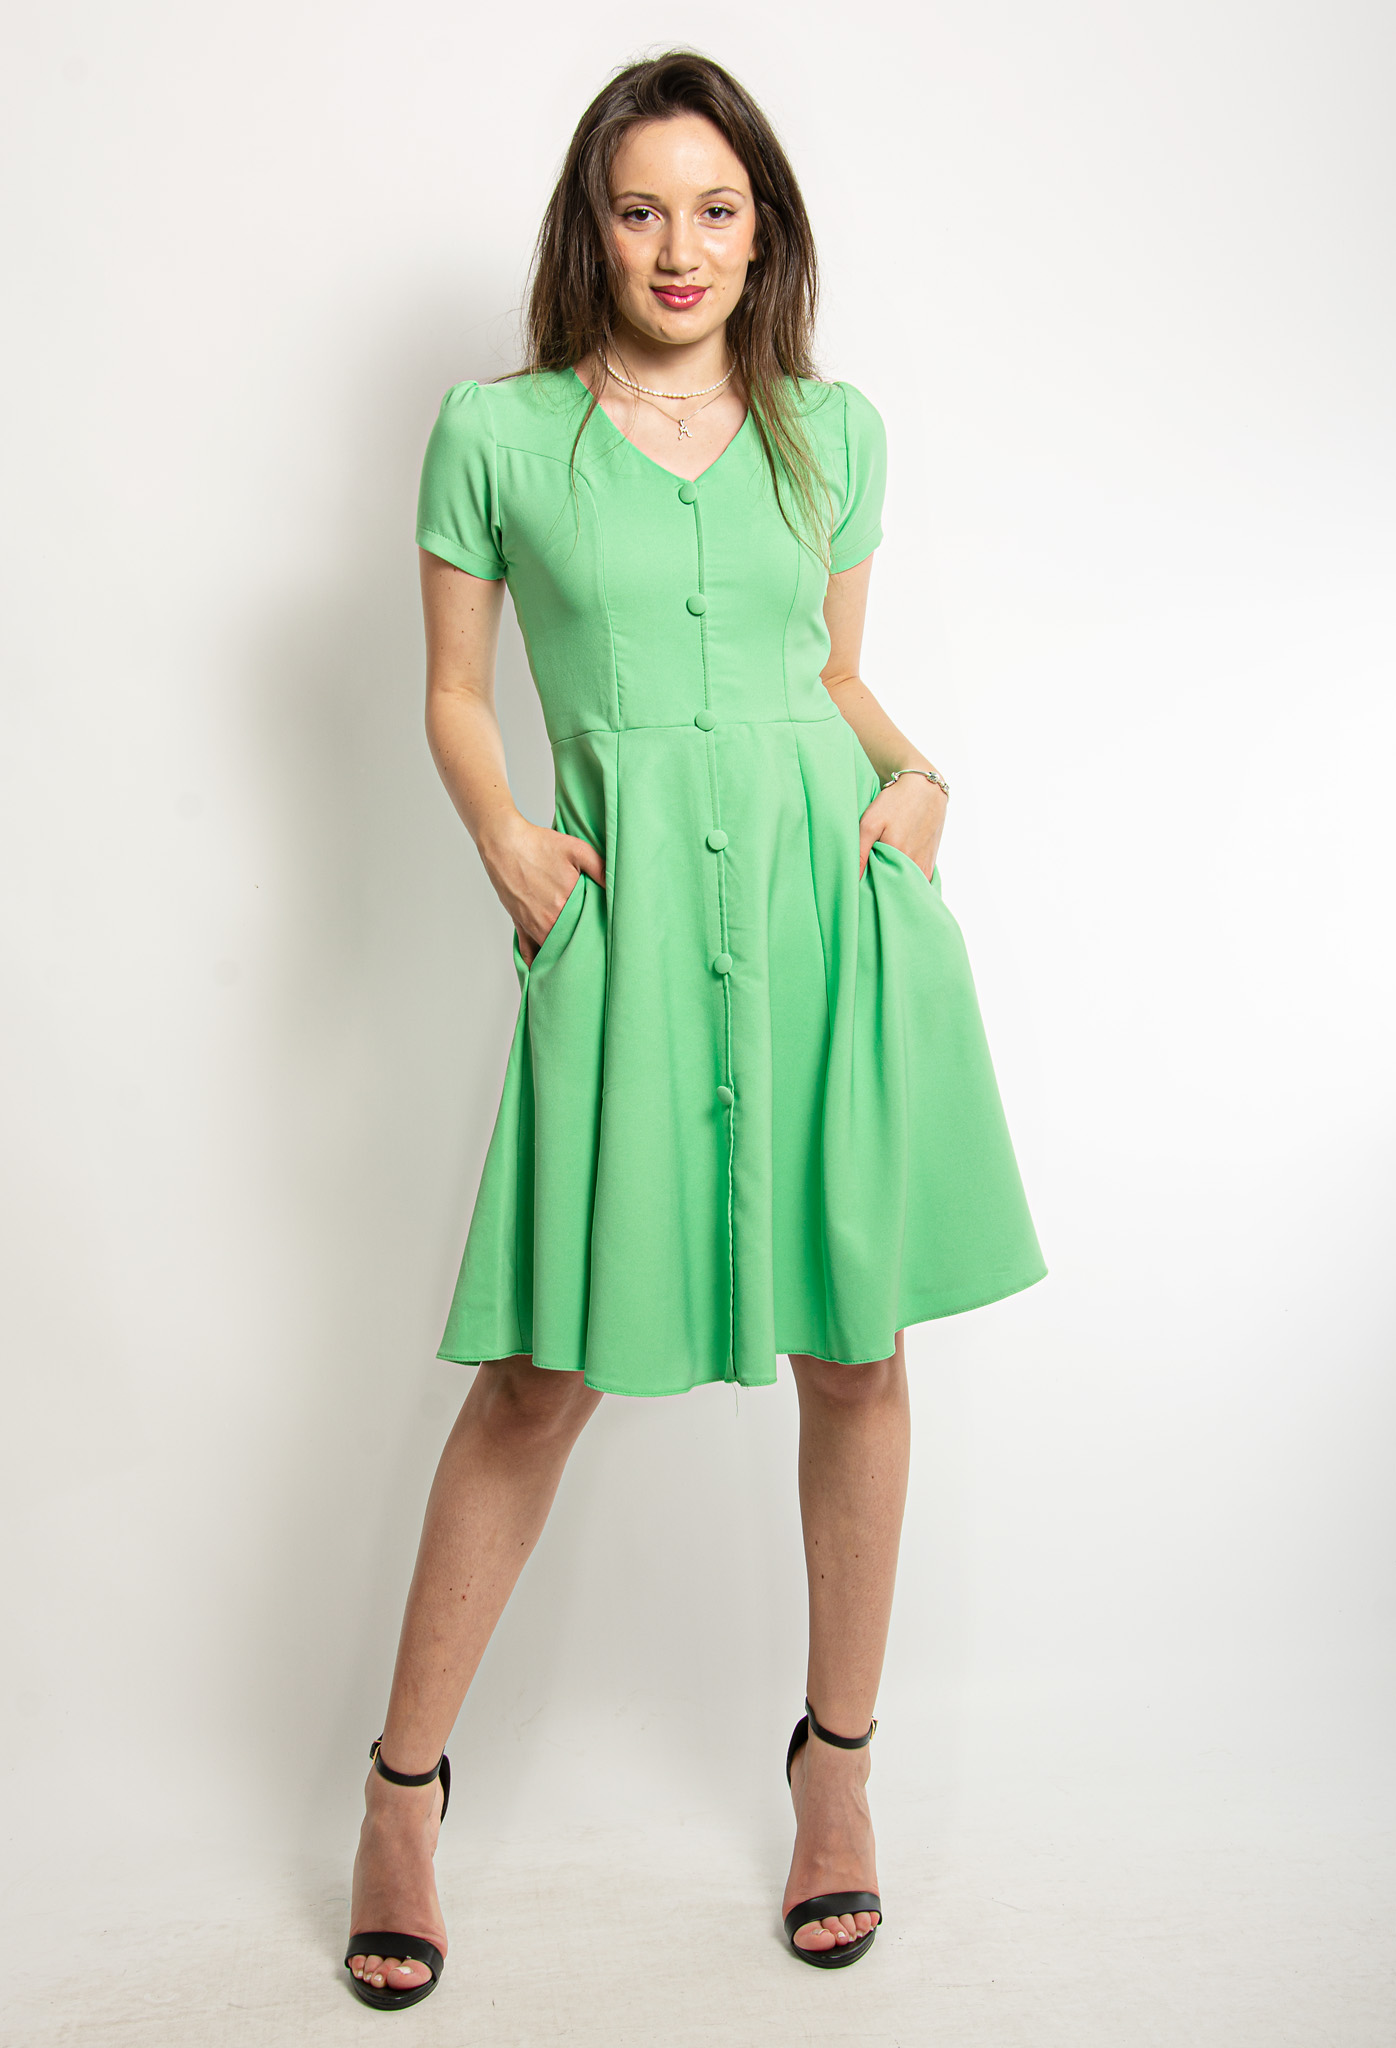 Φόρεμα Vintage Πράσινο | EllenBoutique